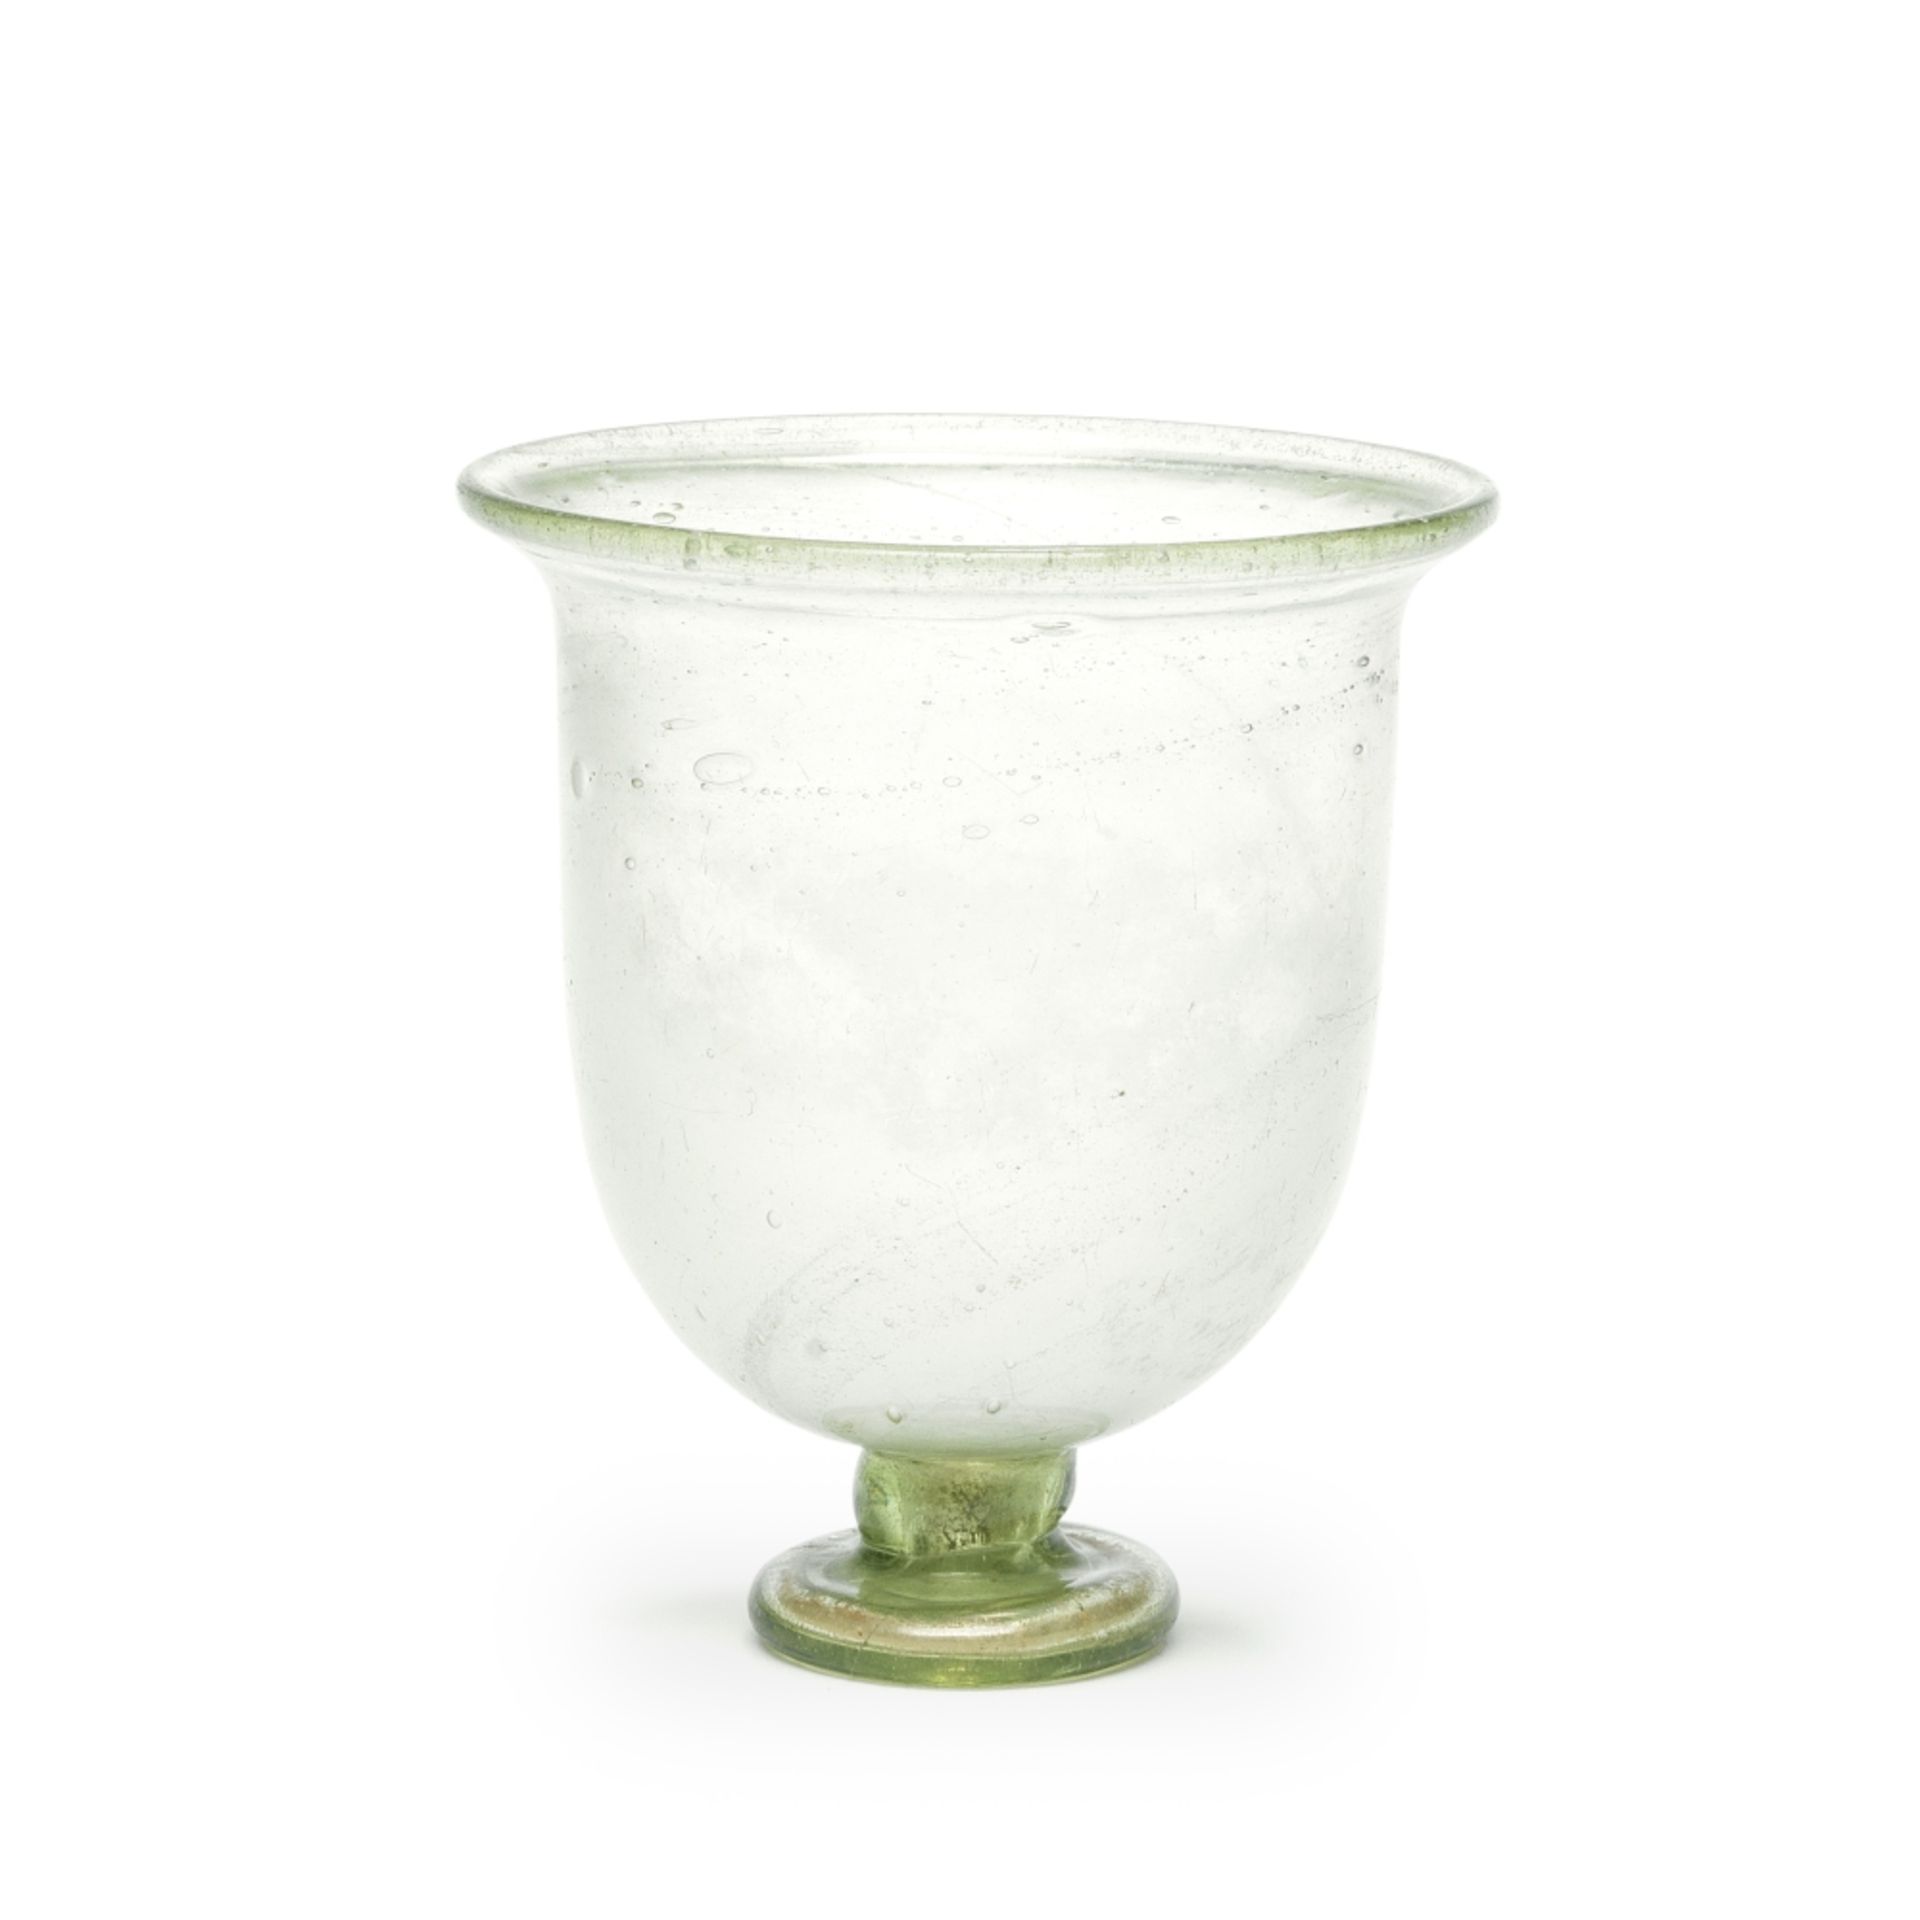 A Roman green glass goblet